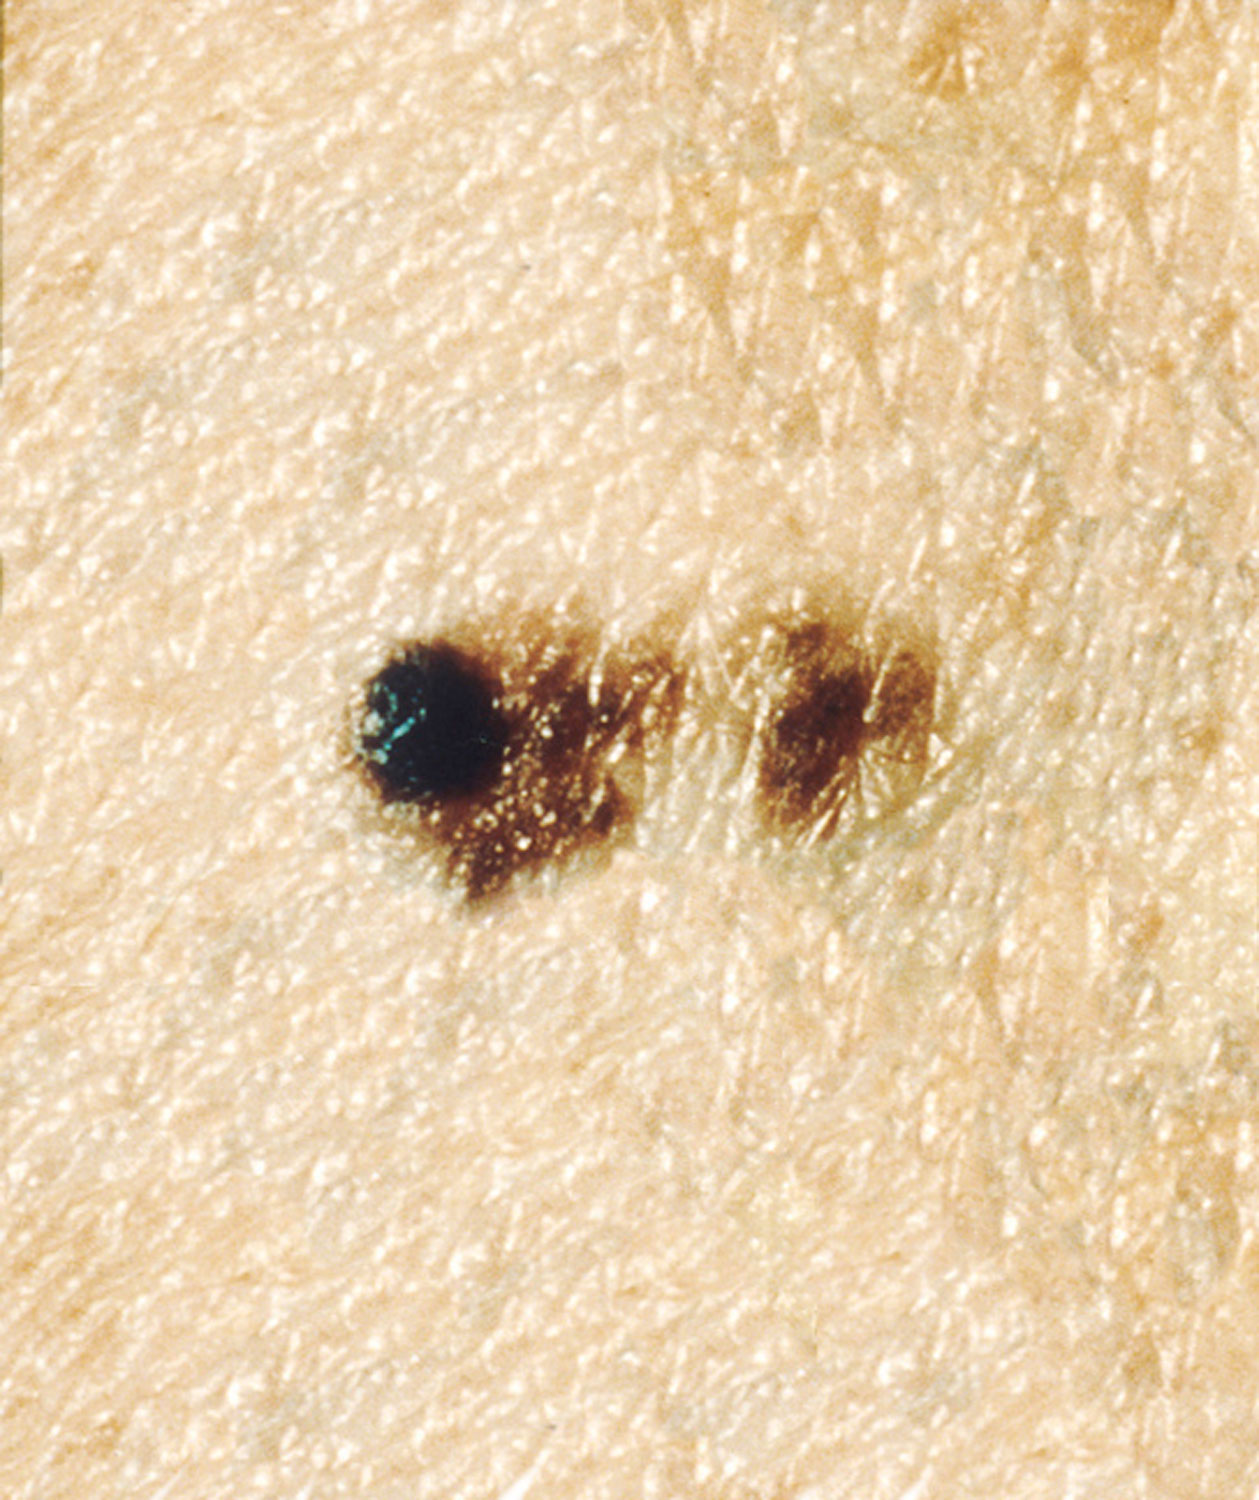 меланома кожи фото начальная